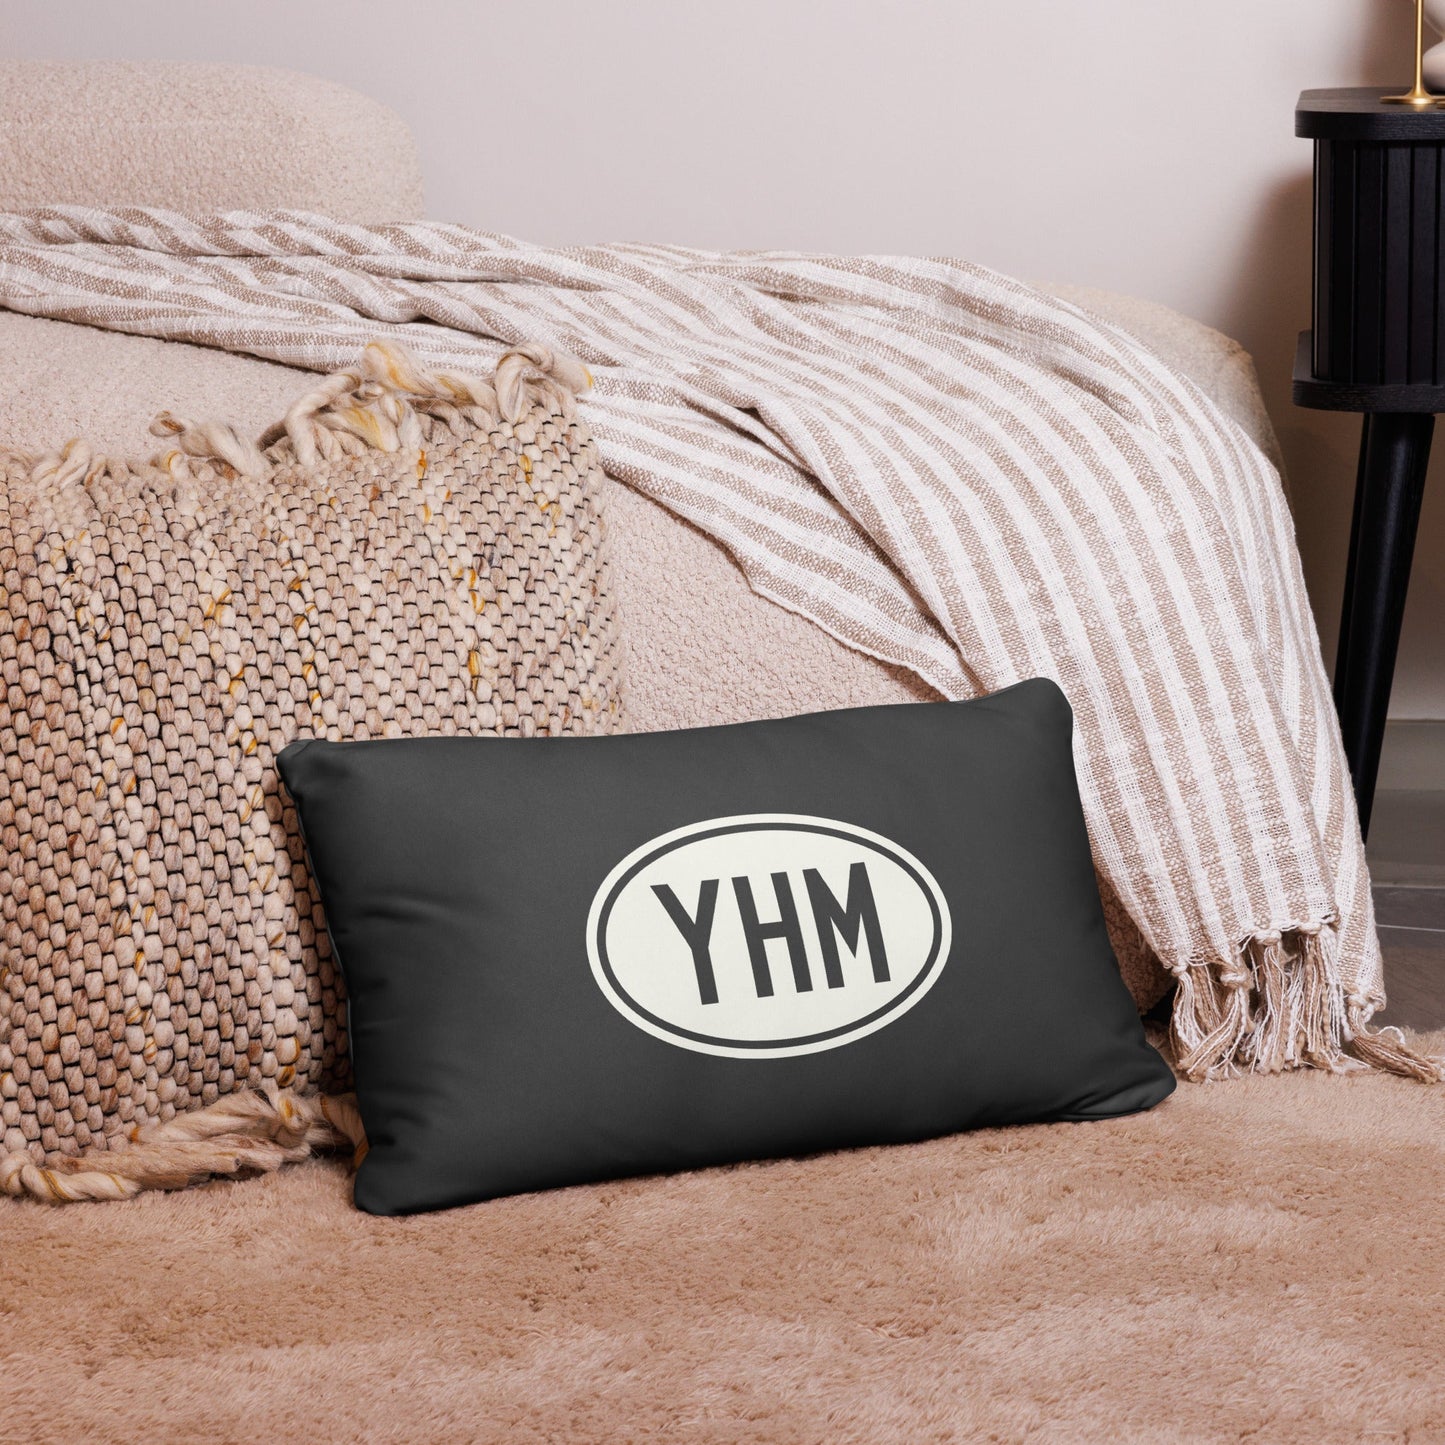 Unique Travel Gift Throw Pillow - White Oval • SAT San Antonio • YHM Designs - Image 05